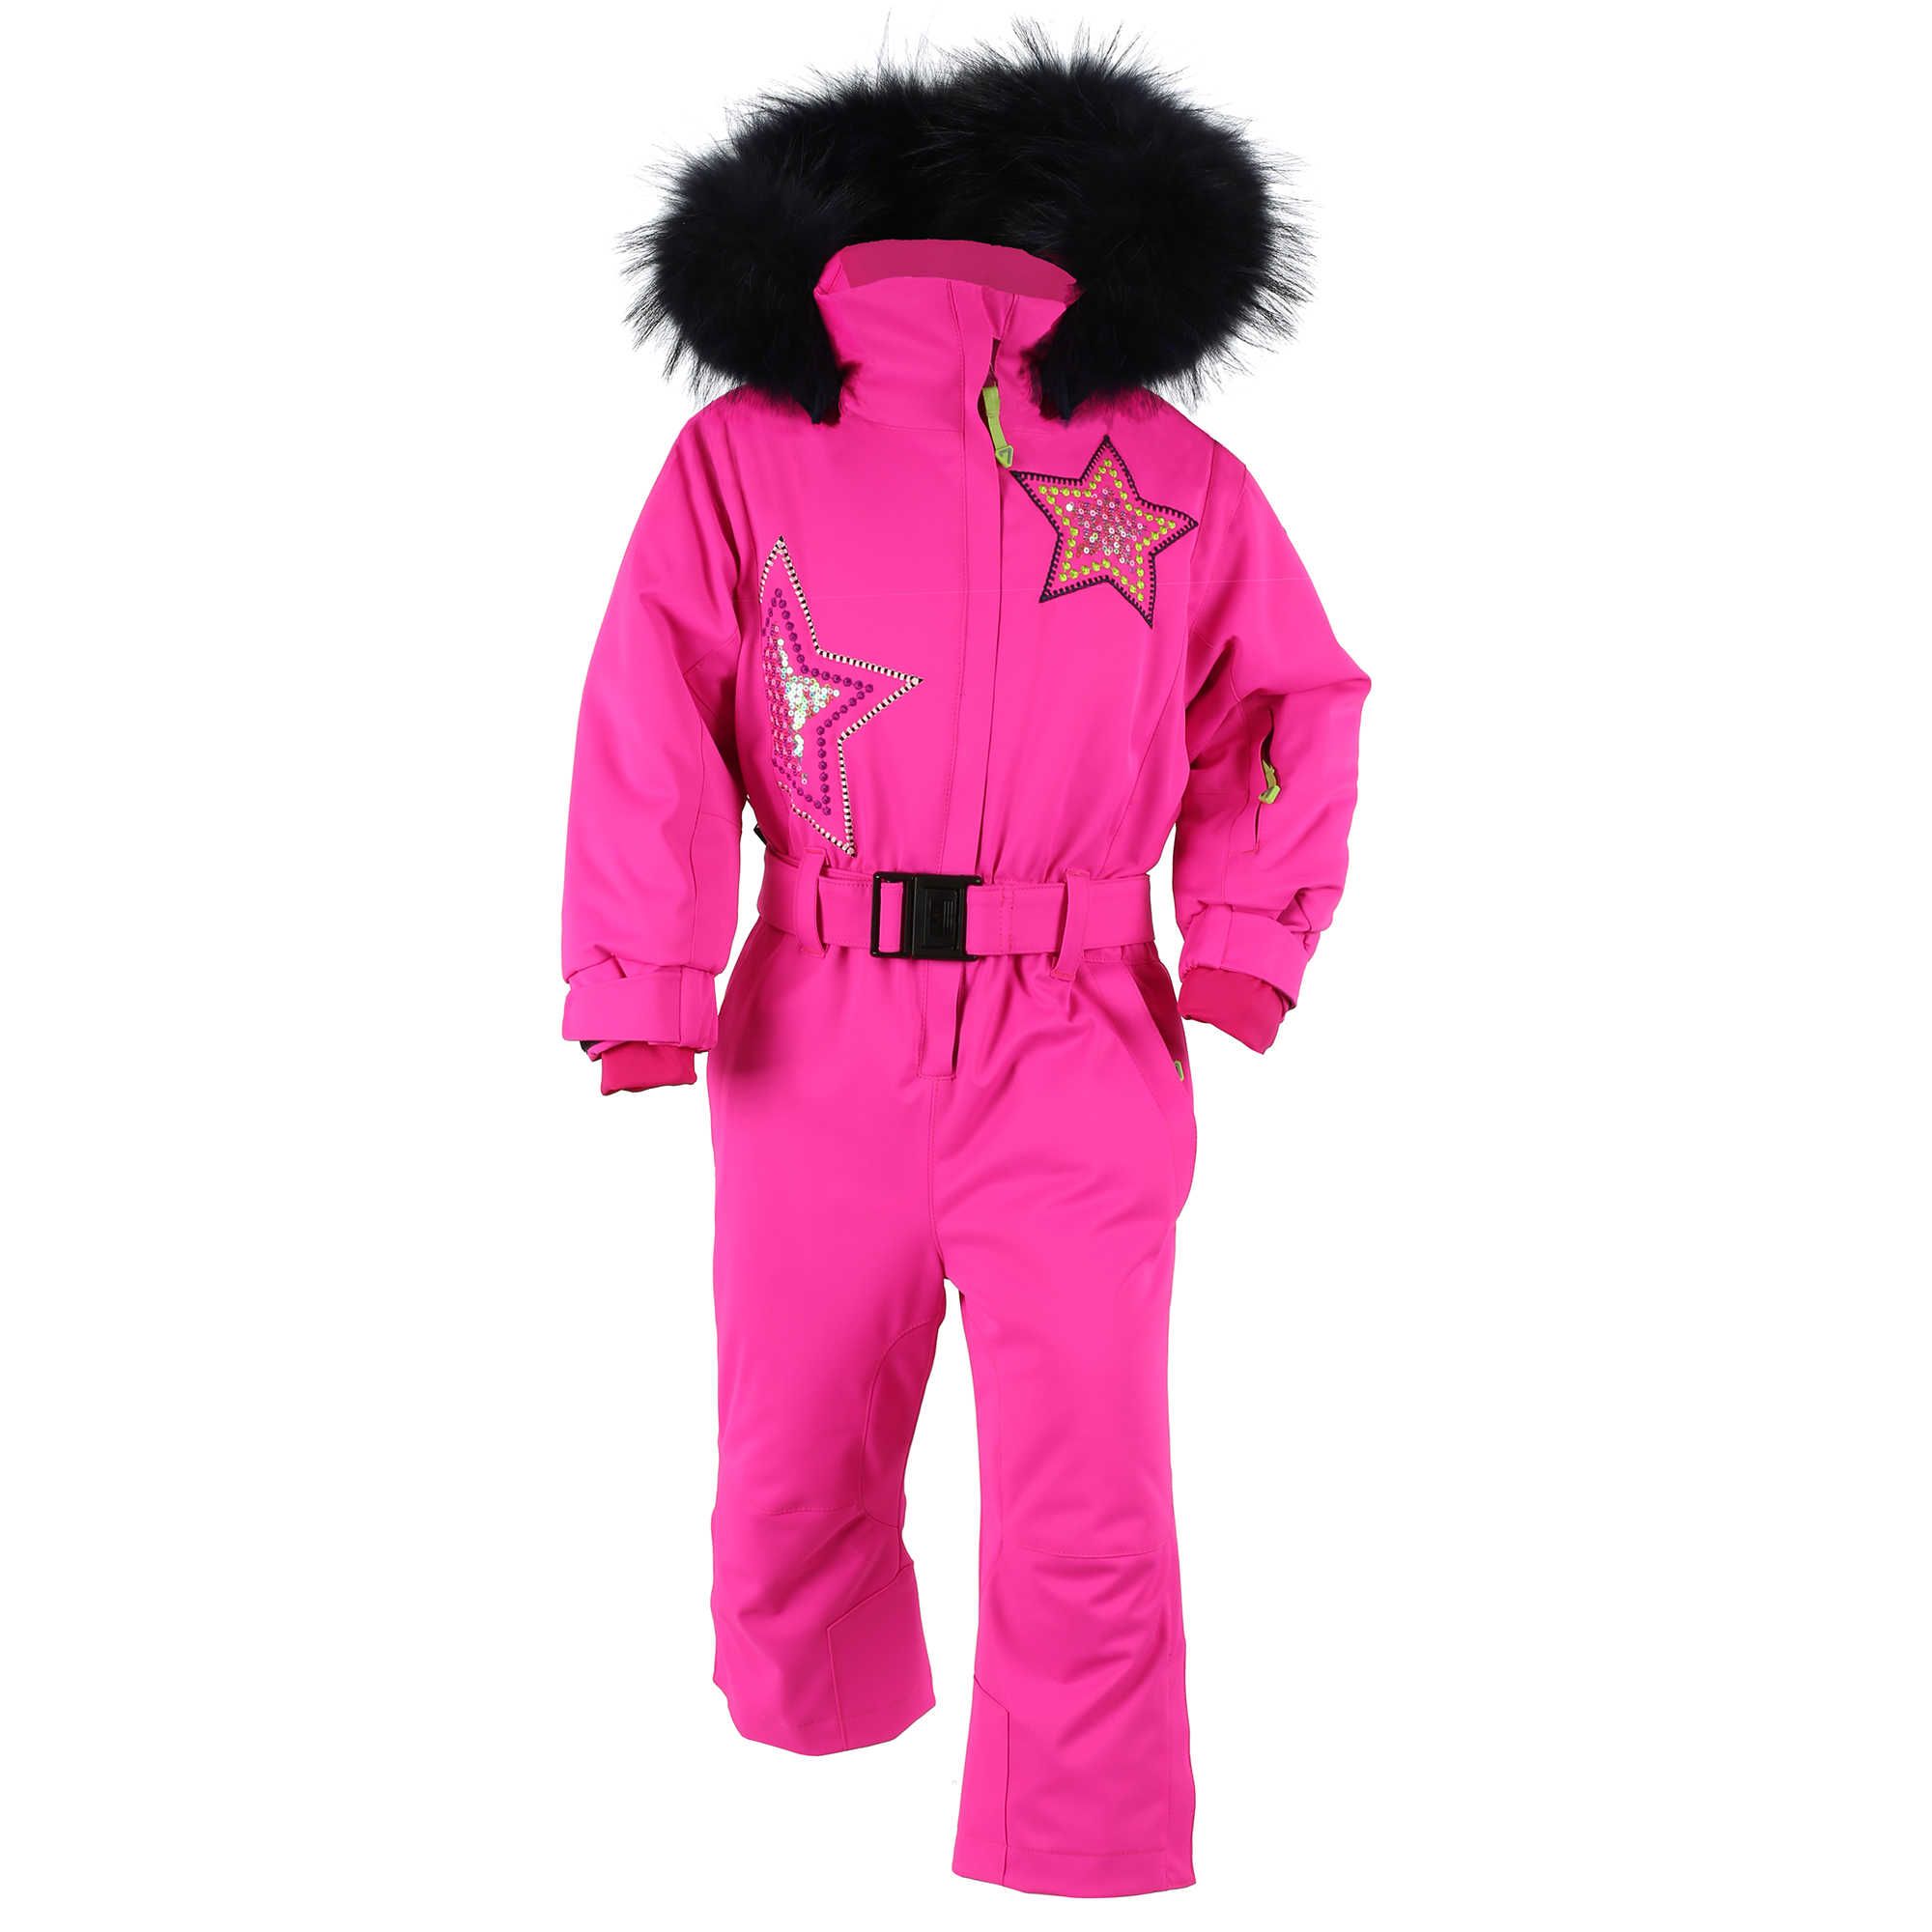 Combinaison ski fille Neige - Ultra Pink